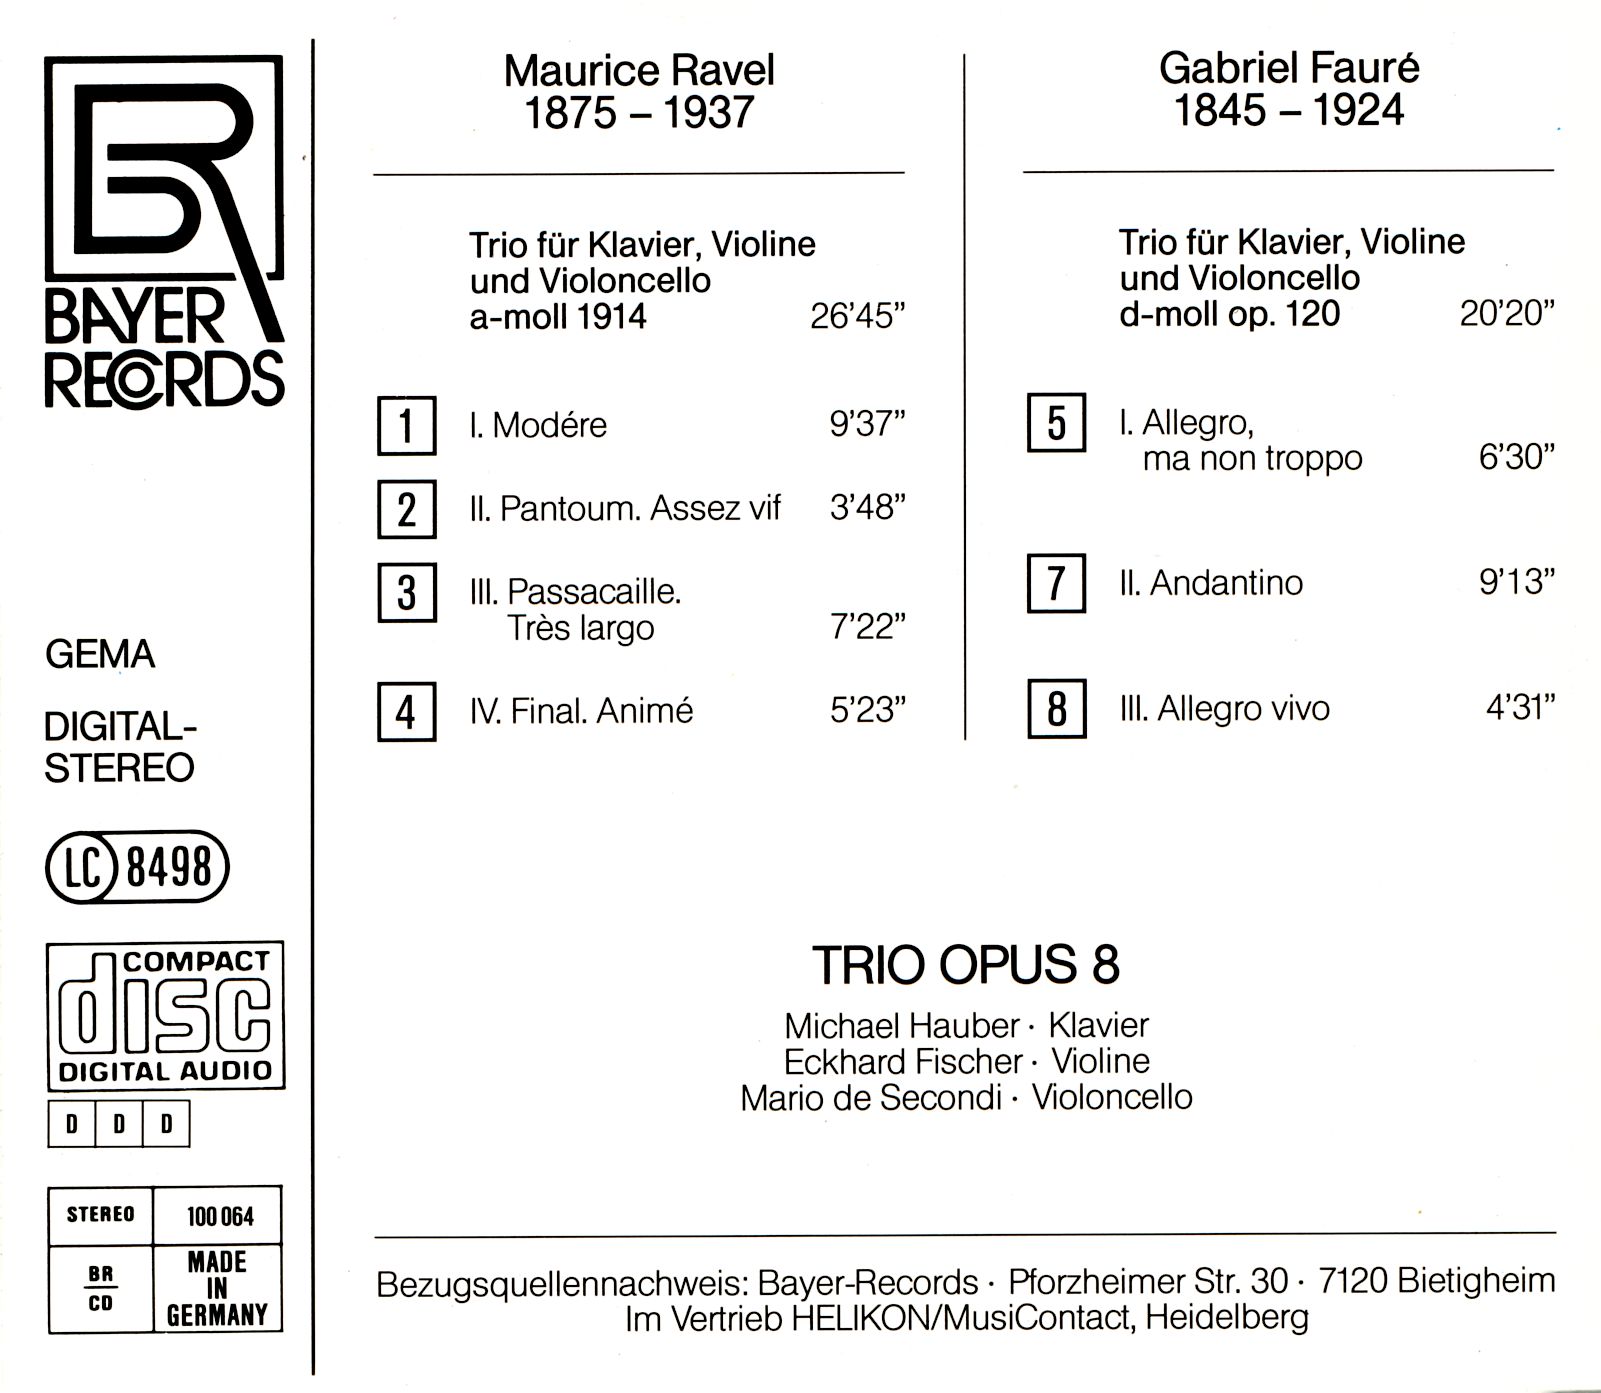 Trio OPUS 8 - Gabriel Fauré / Maurice Ravel